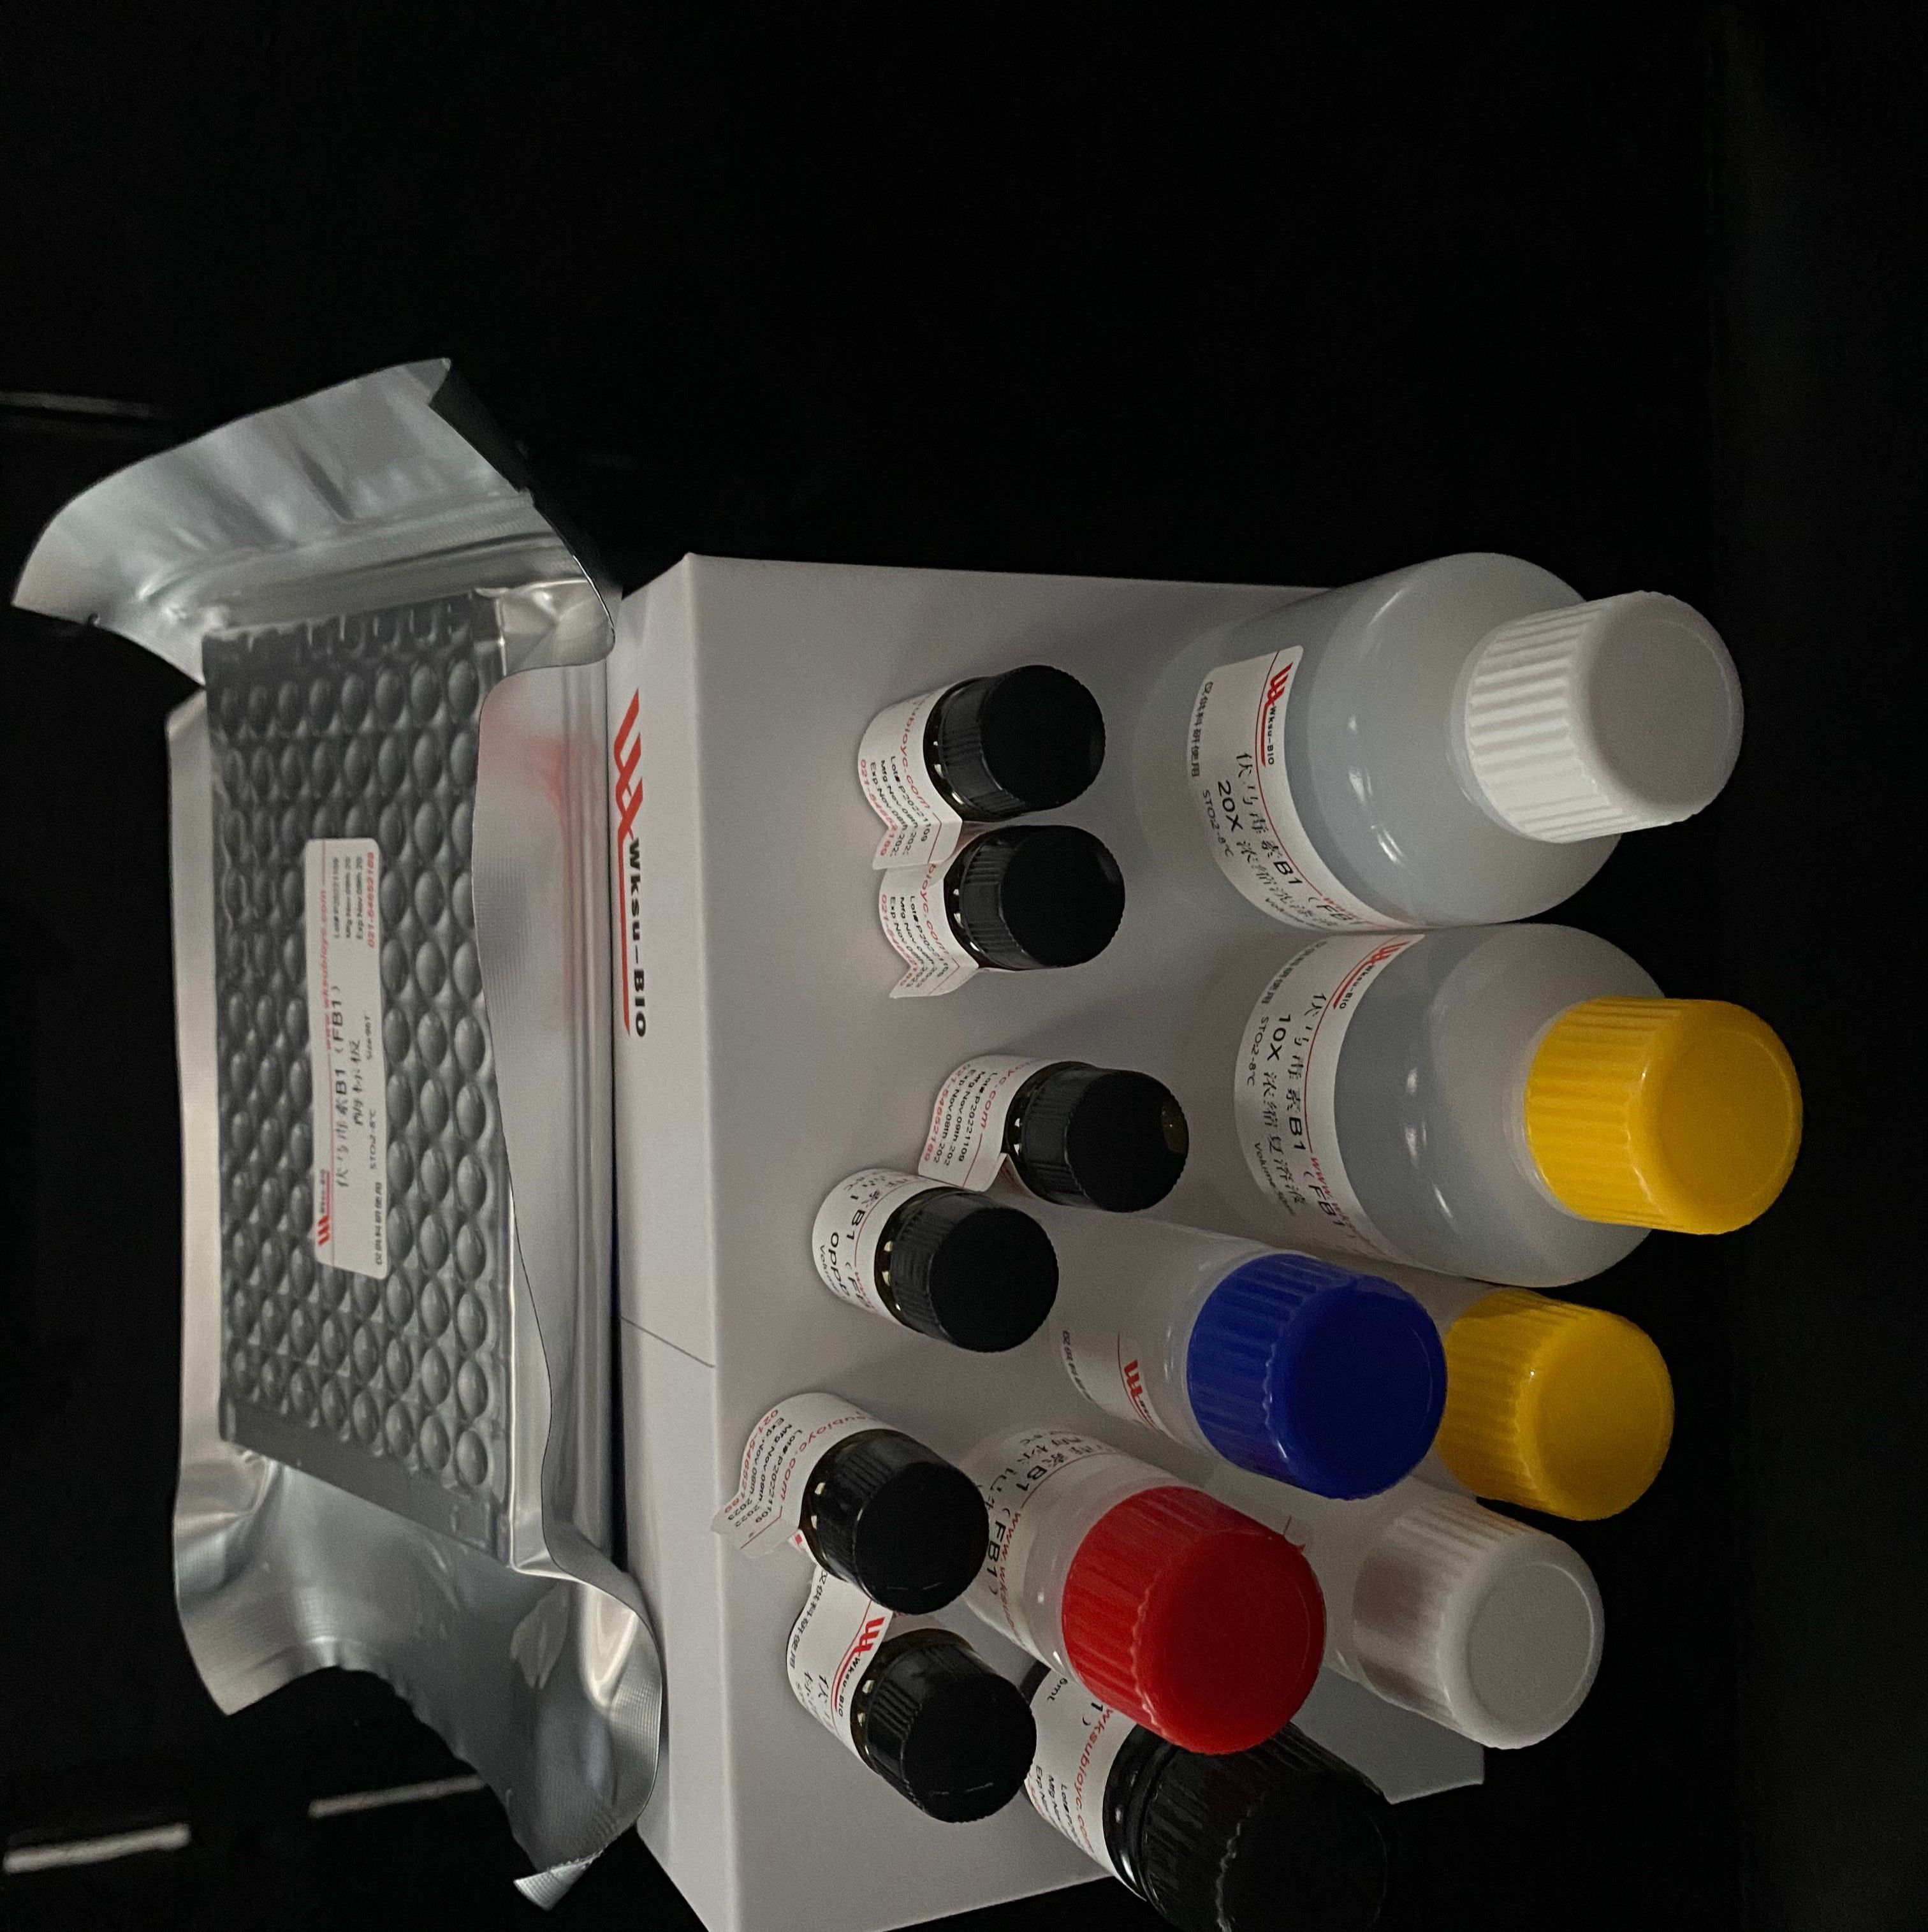 过氧化物酶(POD)试剂盒